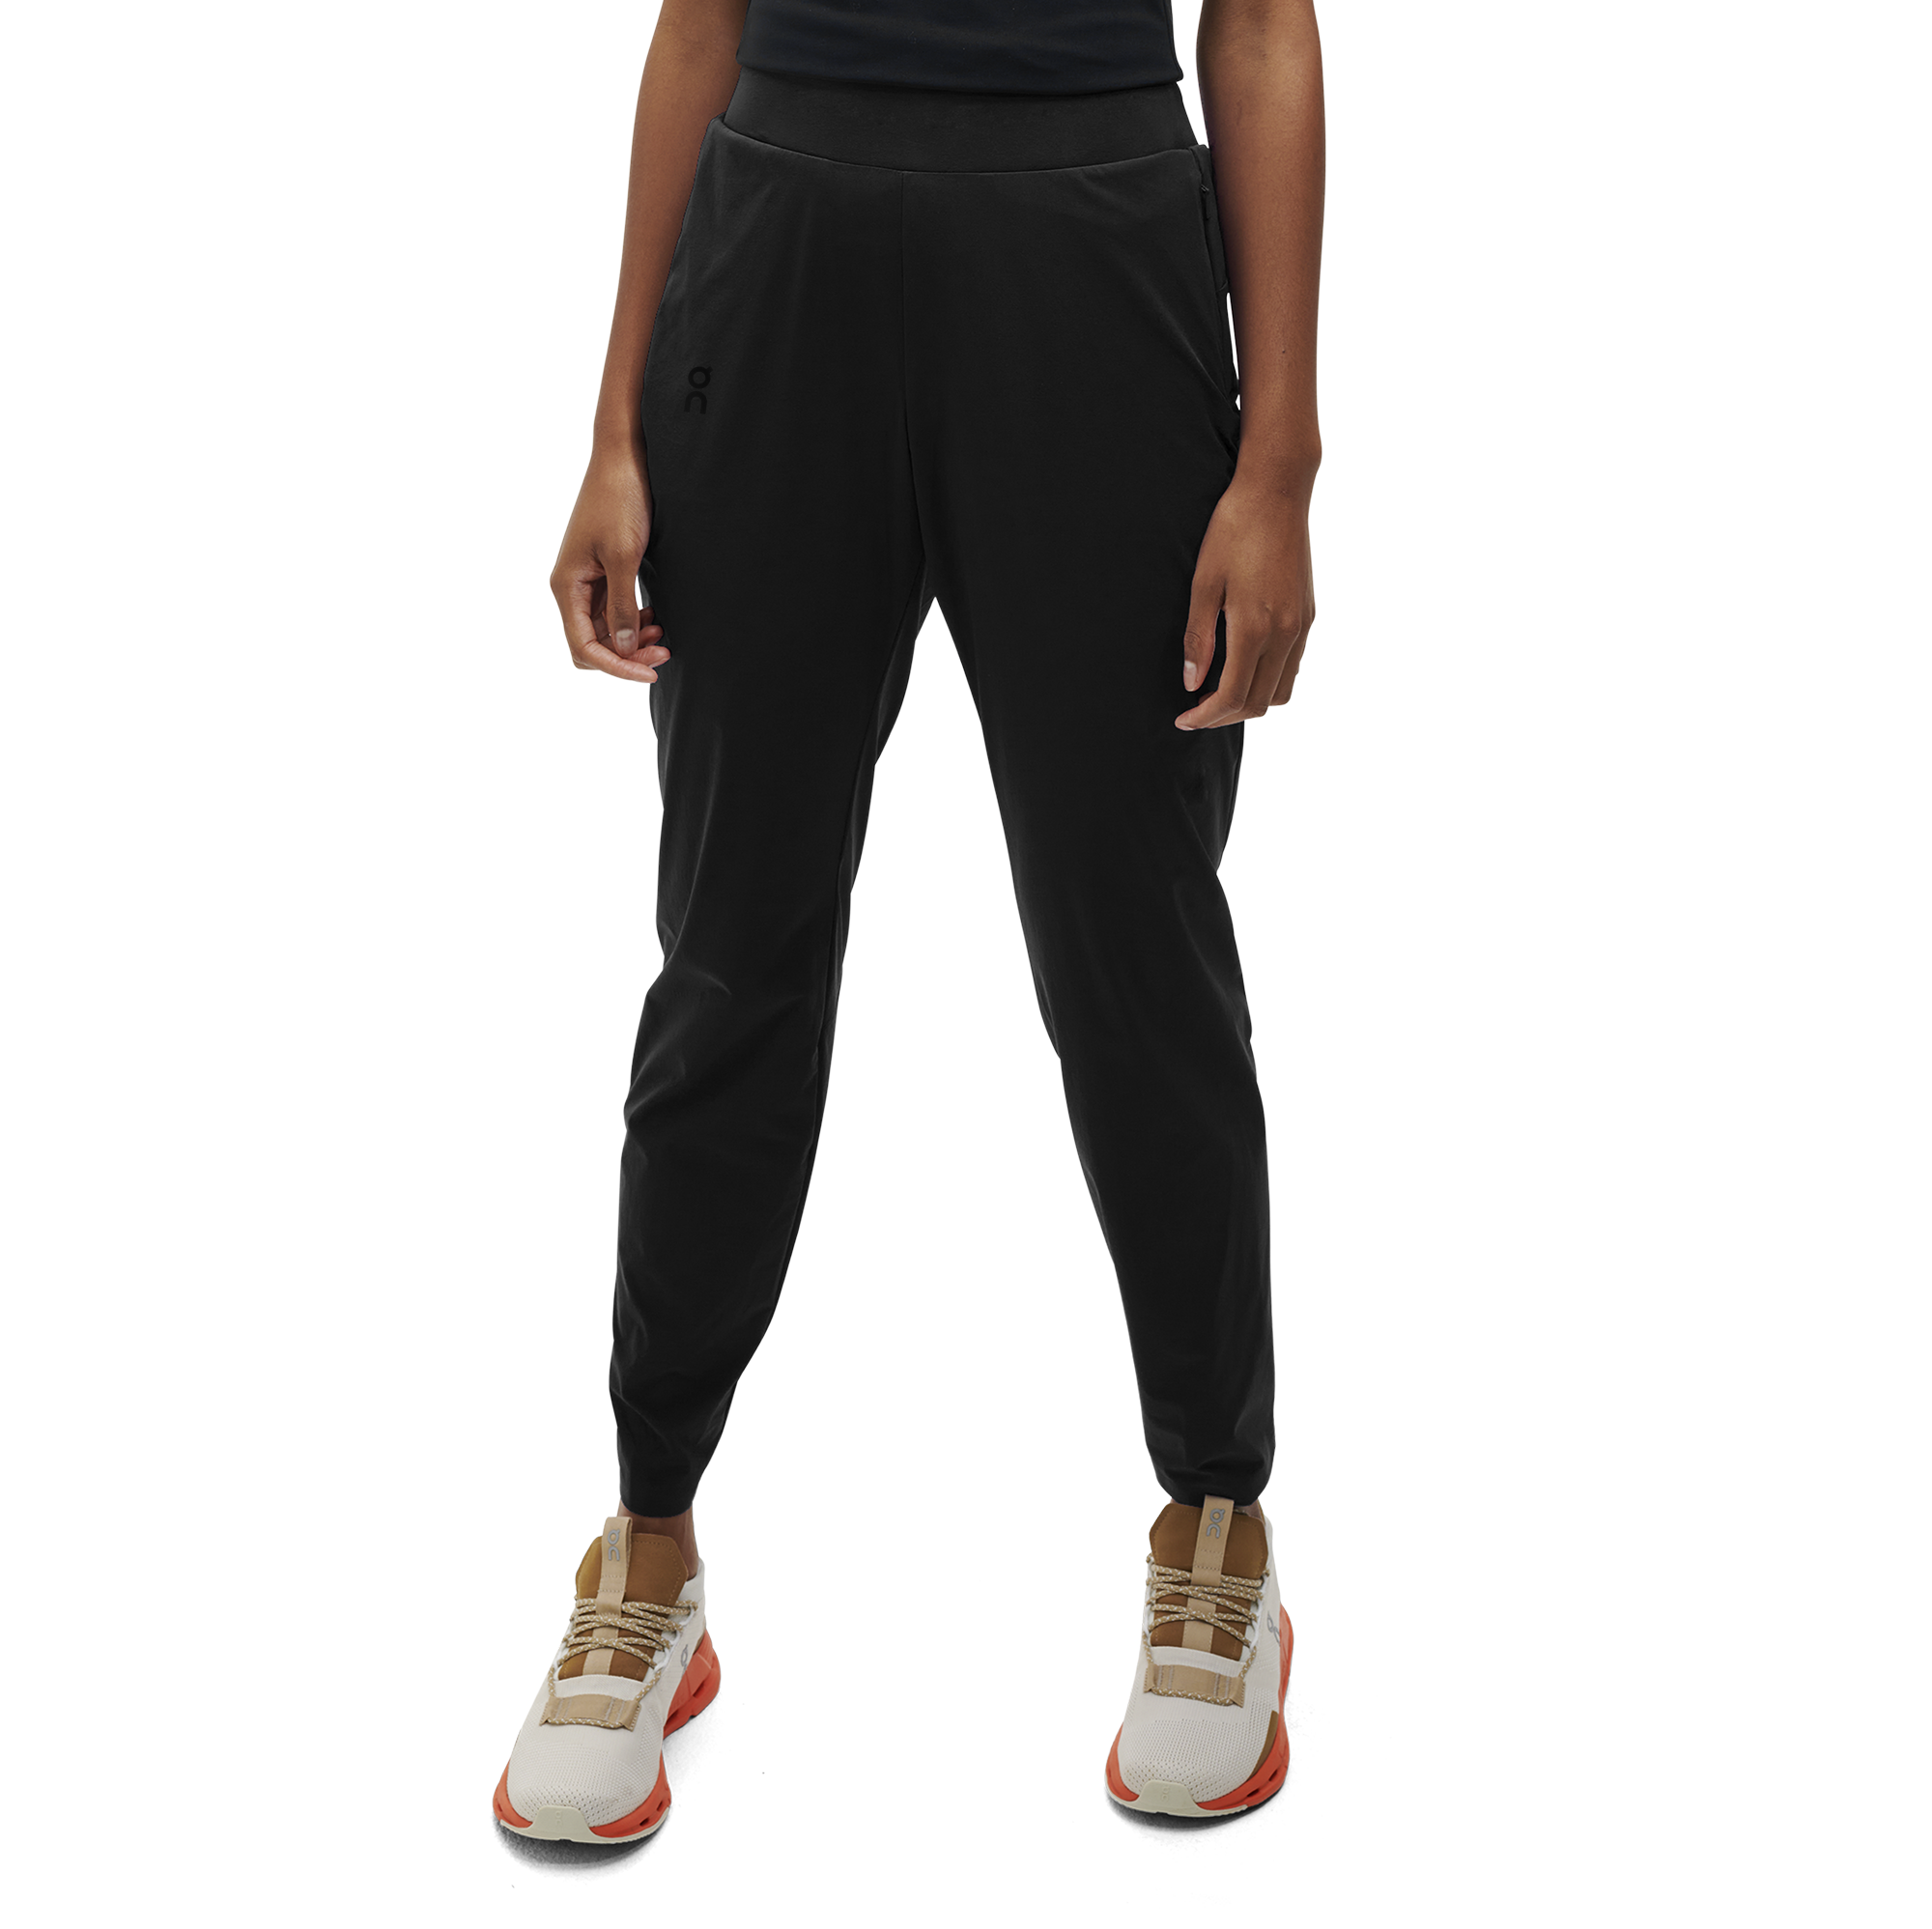 Tek Gear Women's Zipper Ankle Pants  Modest workout clothes, Ankle pants,  Pants